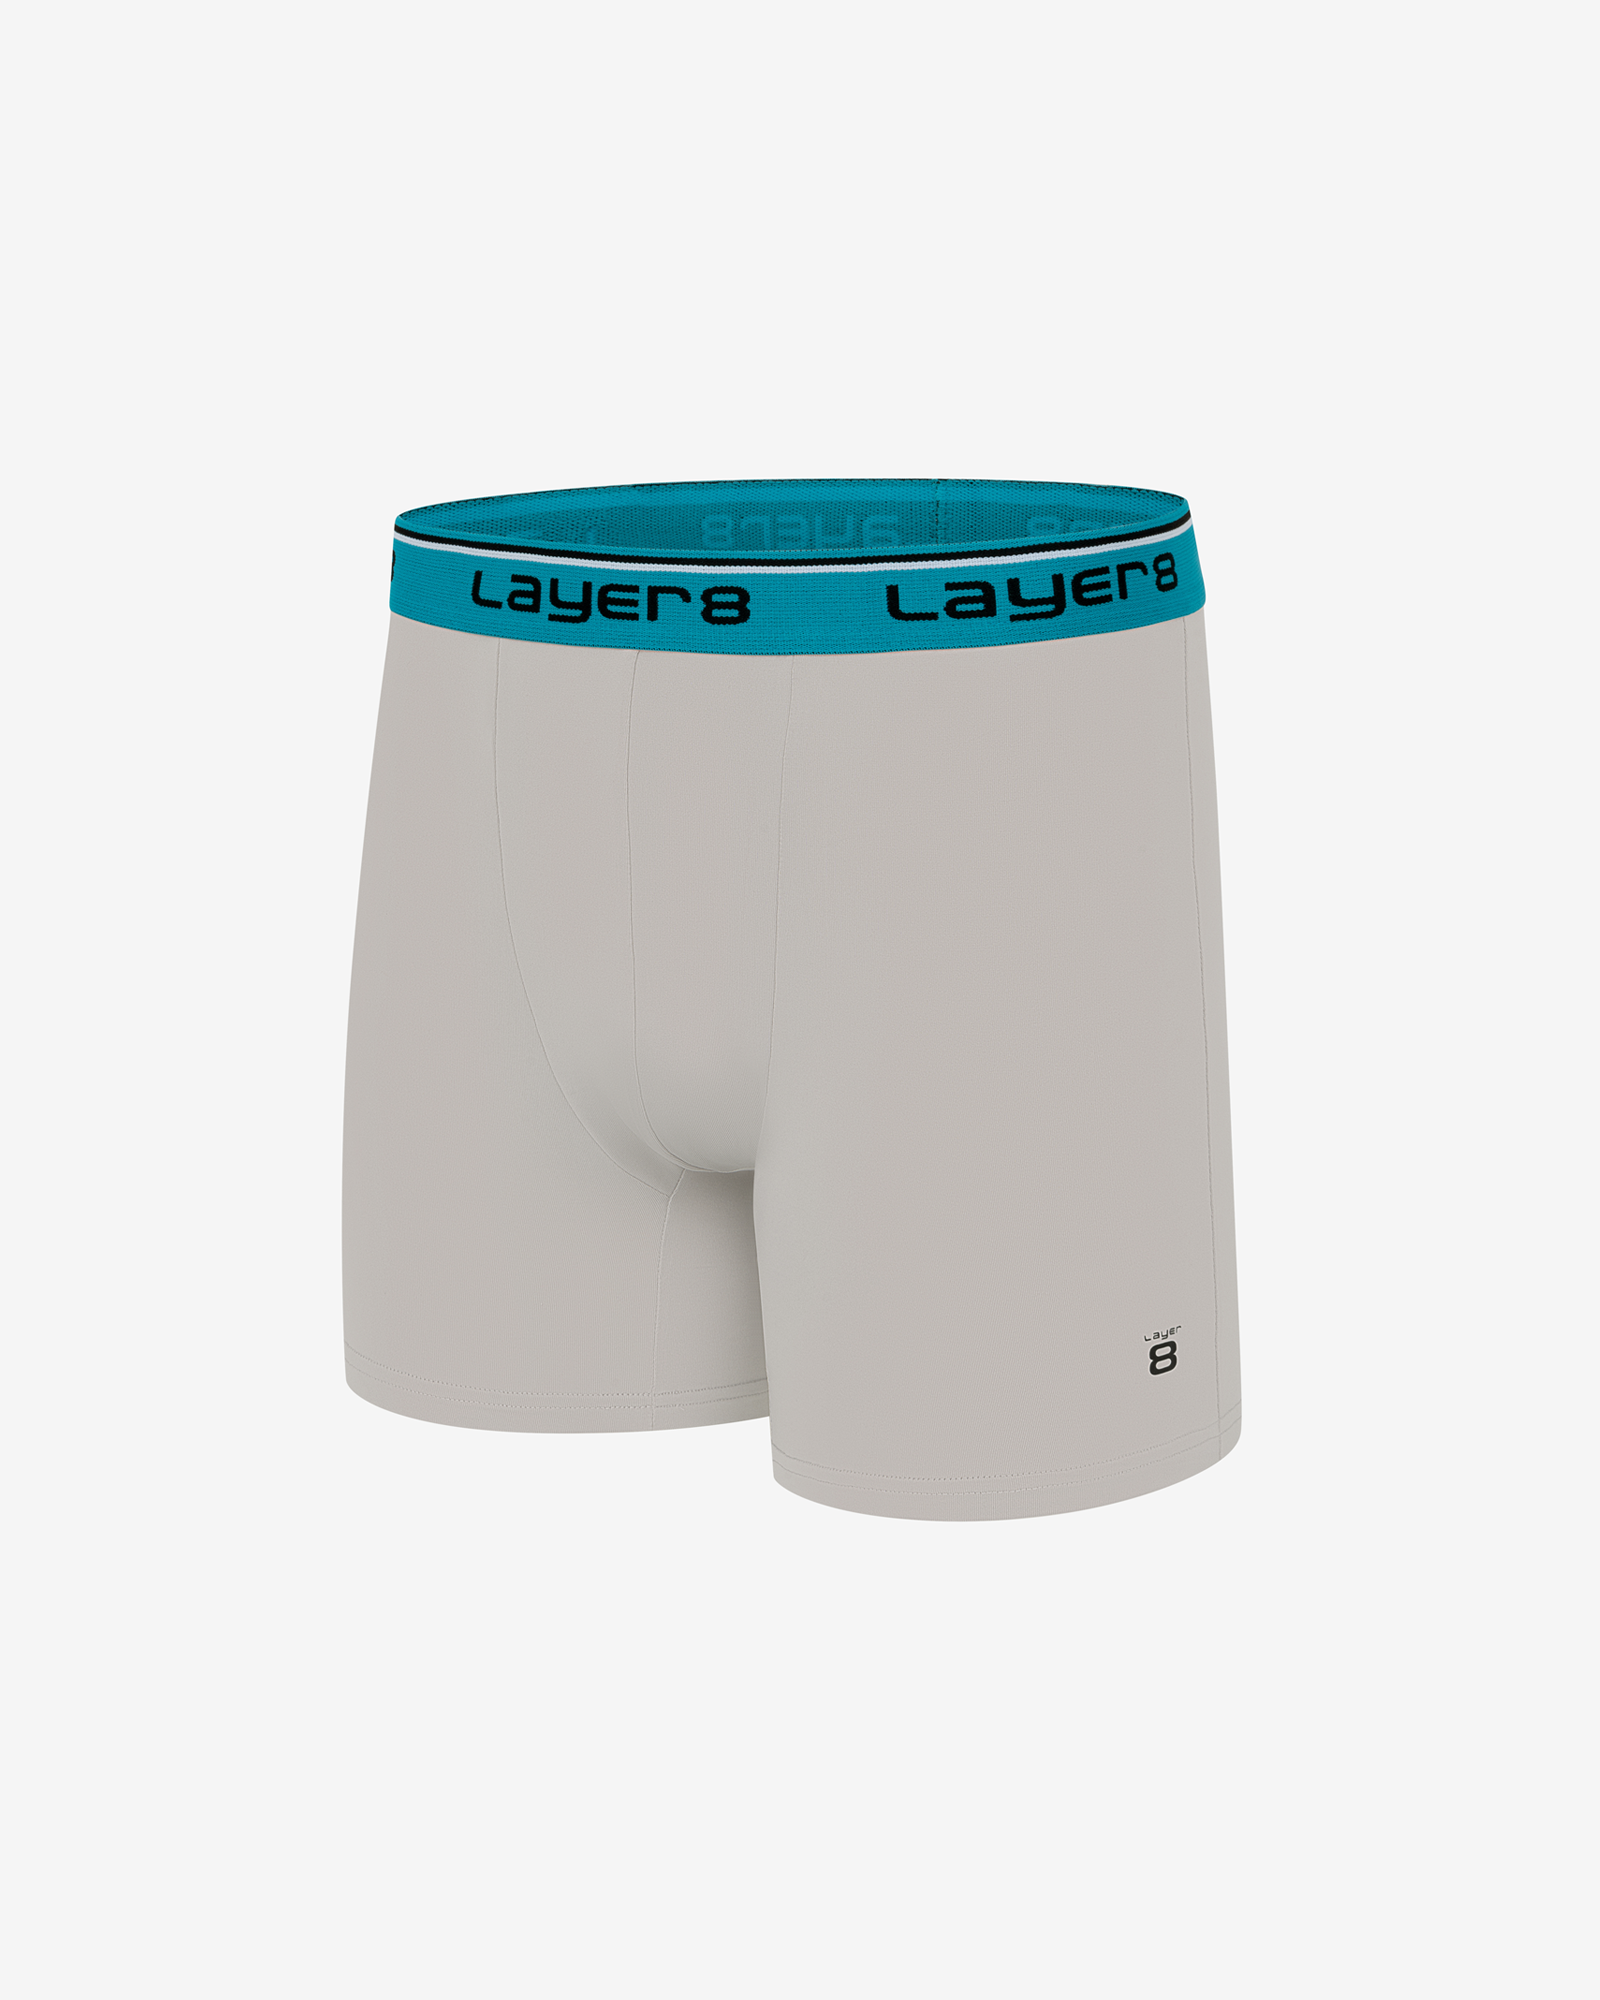 Men's Underwear Layer 8 for sale